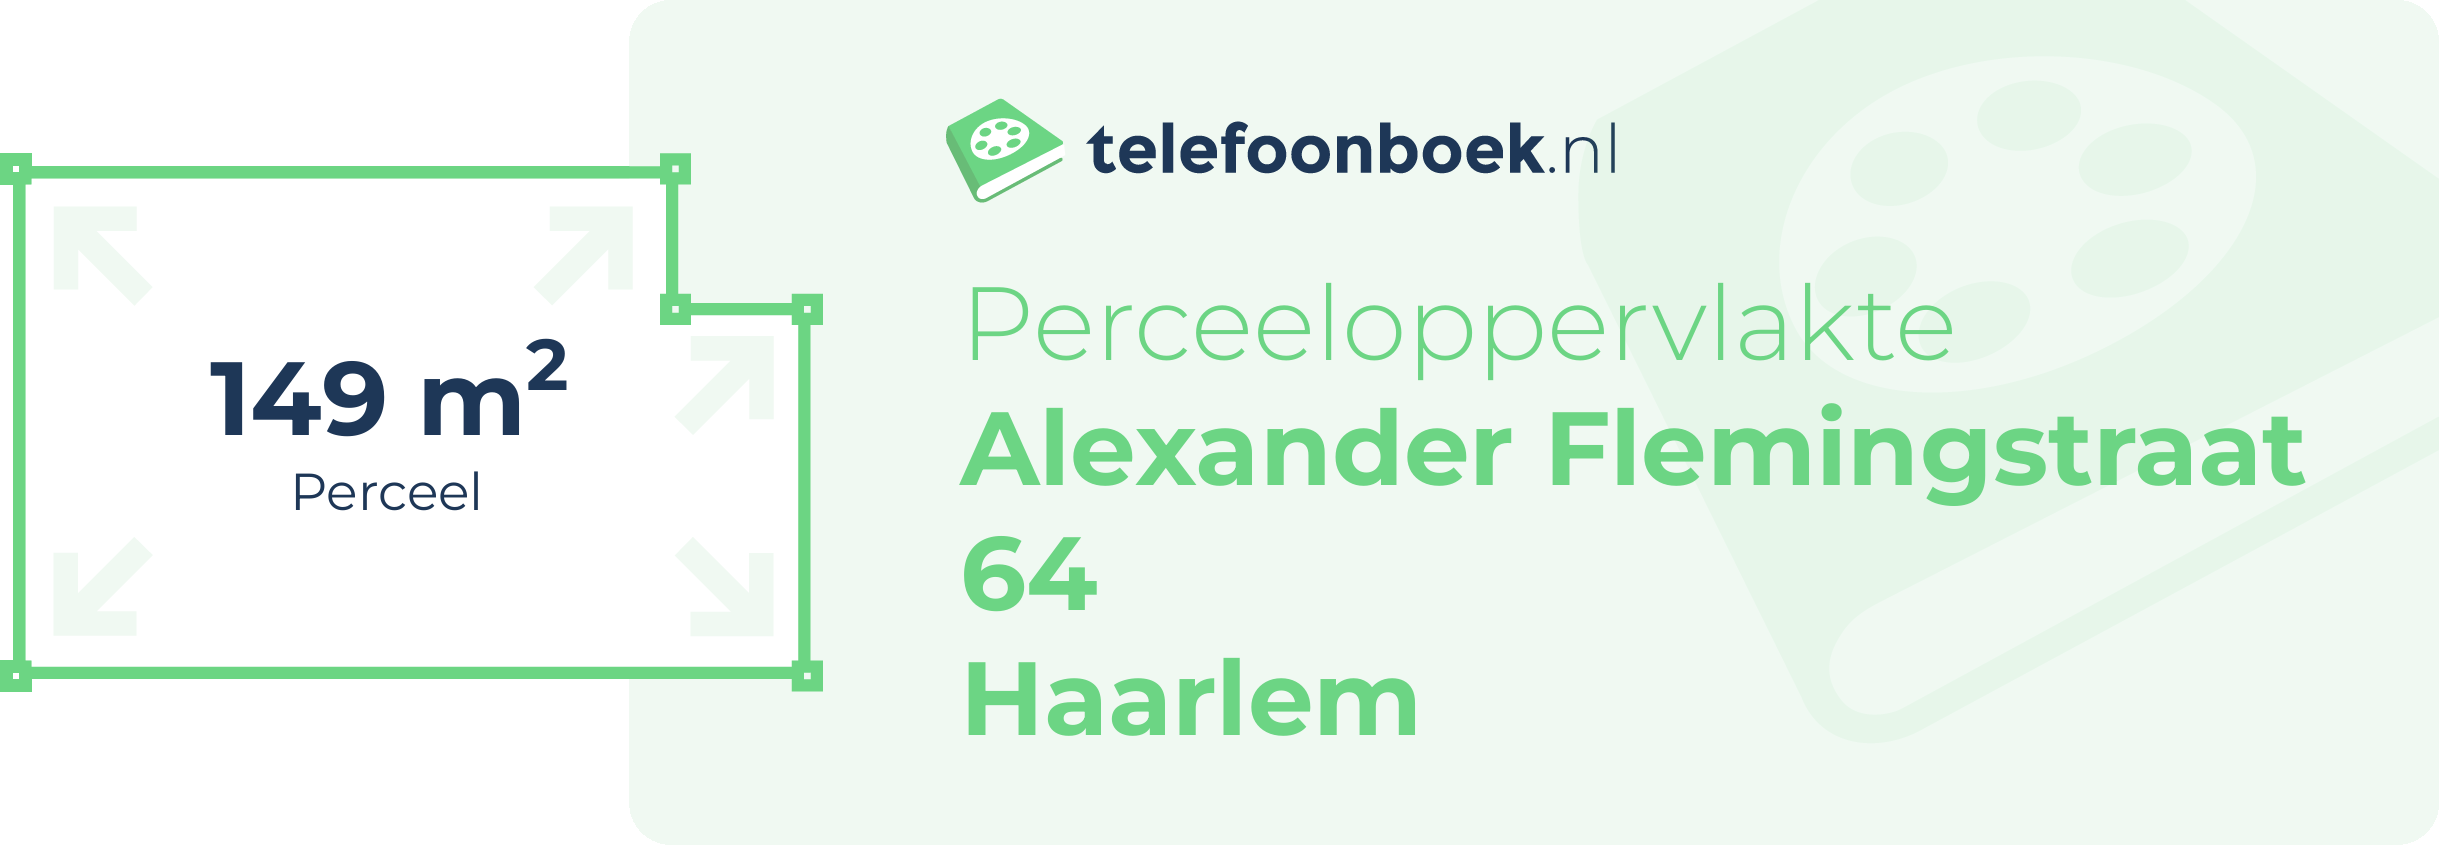 Perceeloppervlakte Alexander Flemingstraat 64 Haarlem